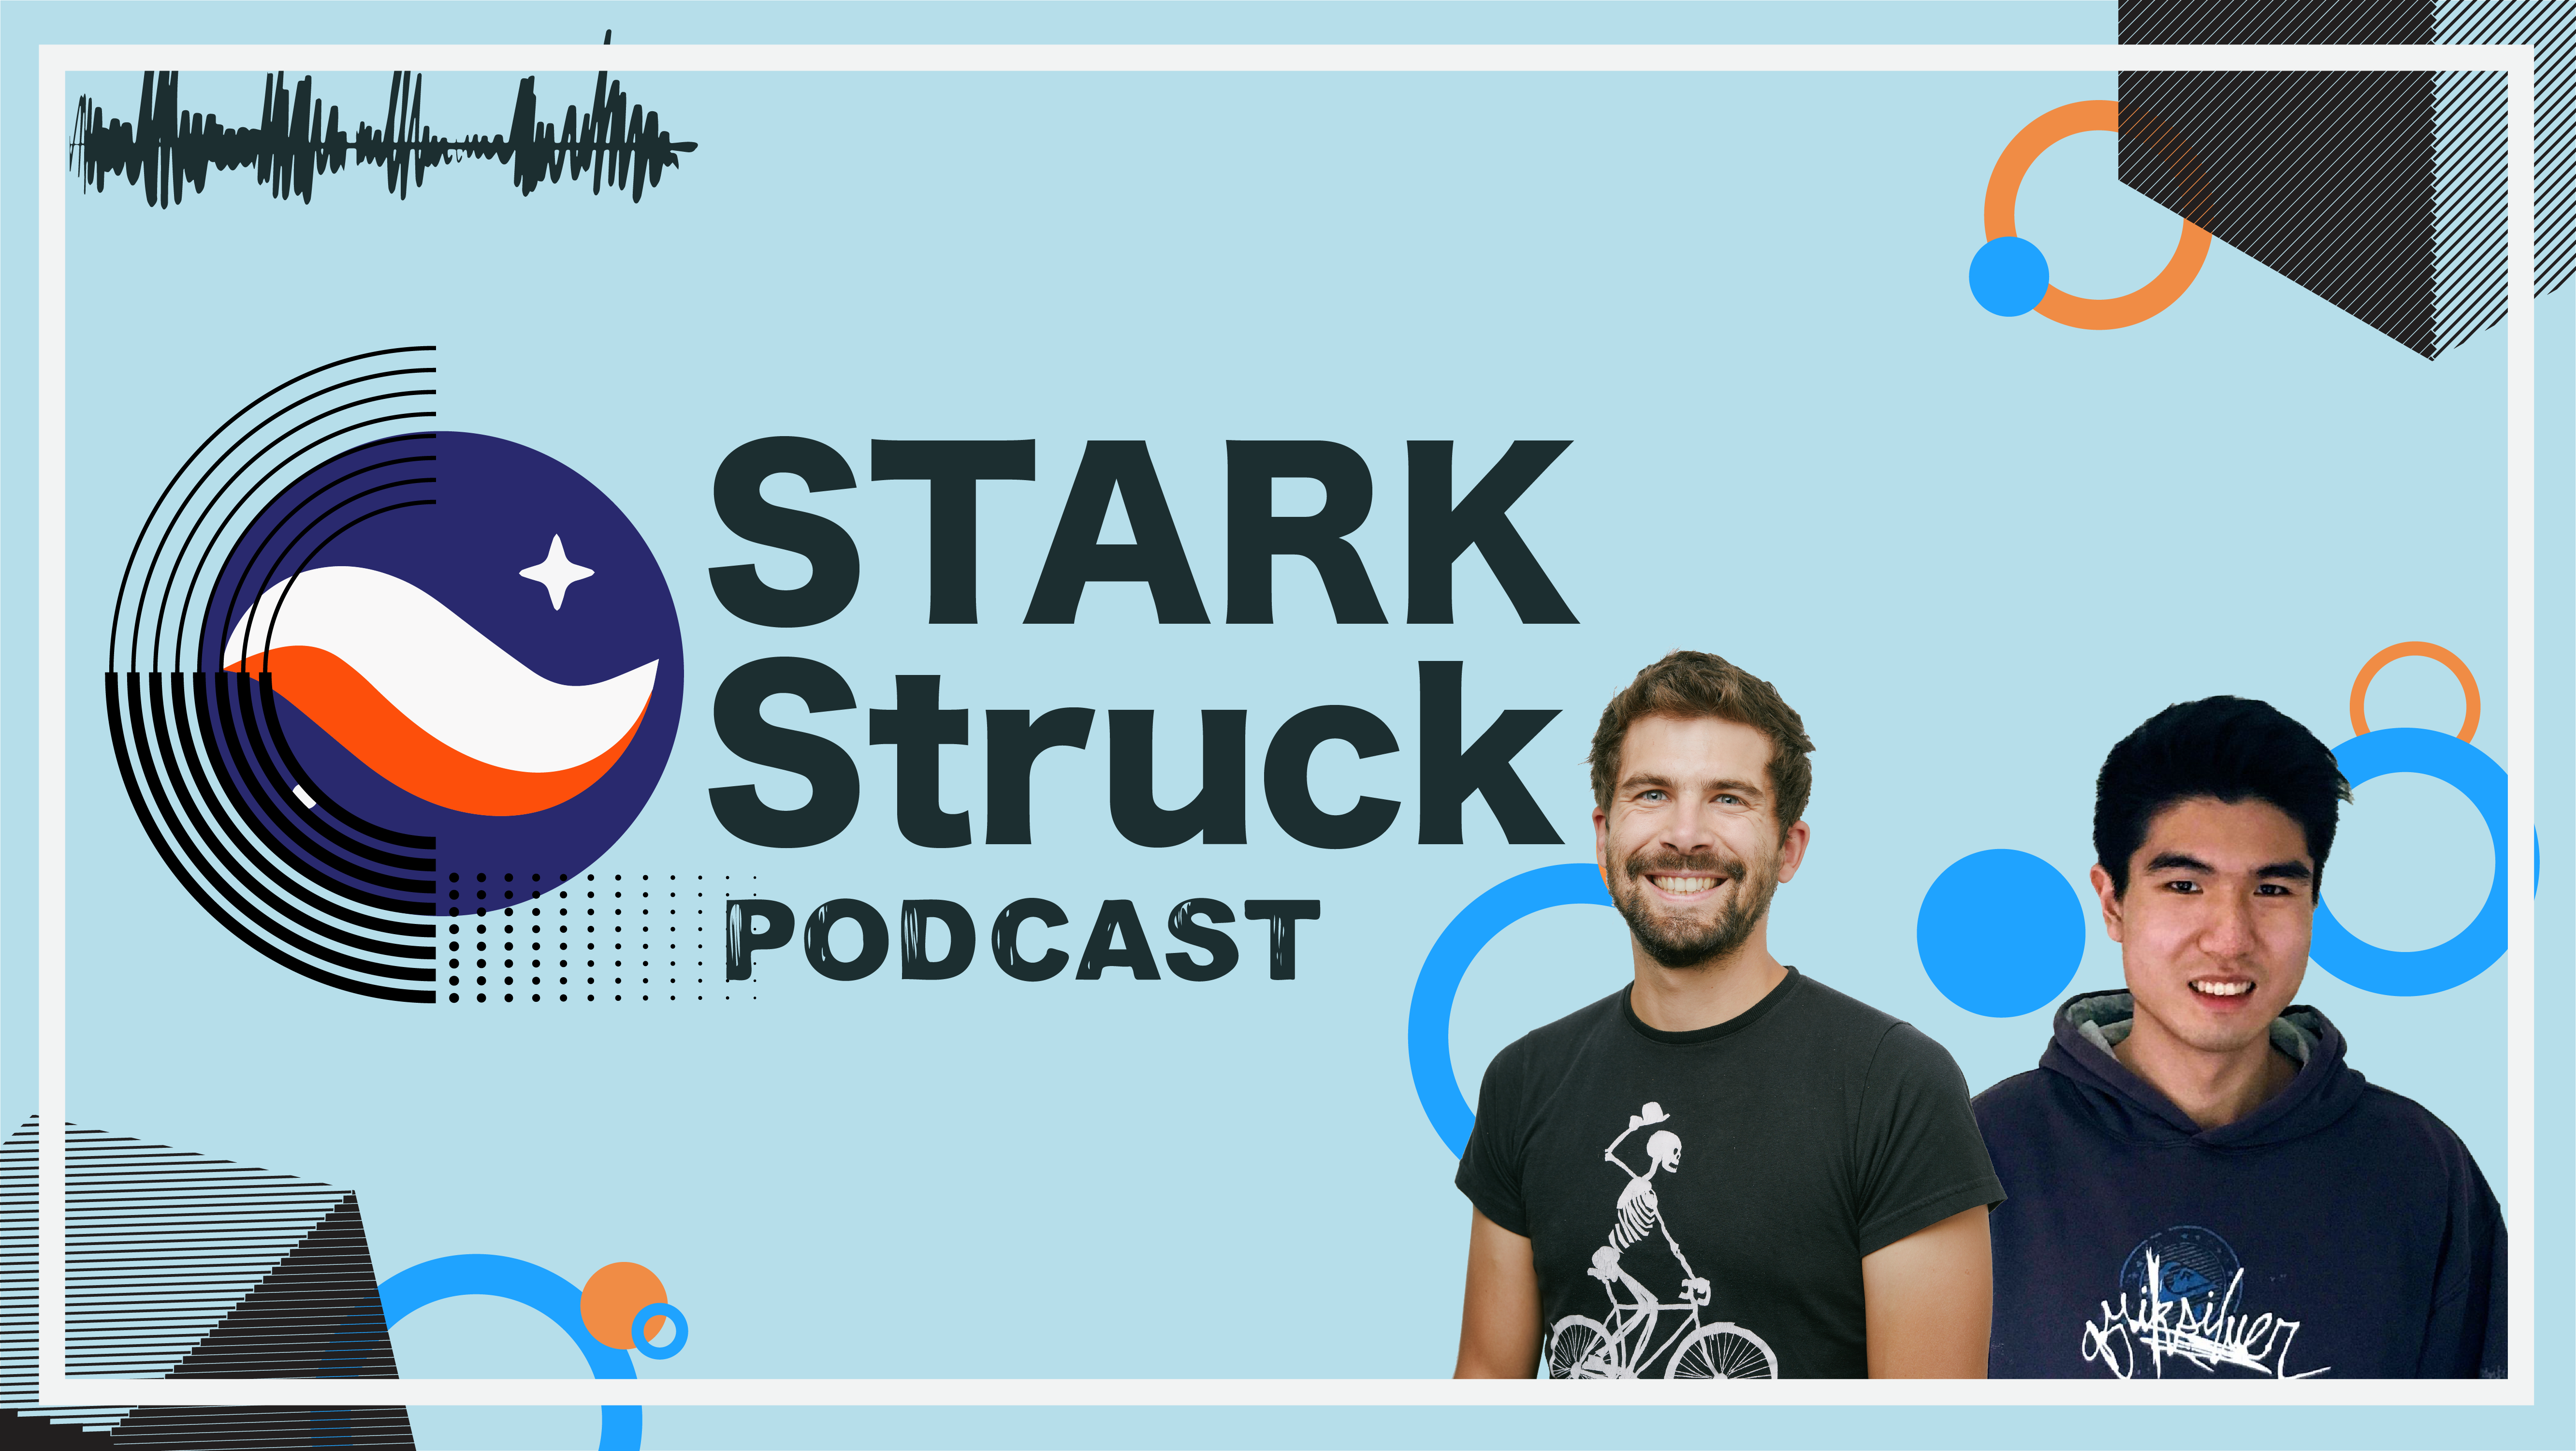 STARK Struck Podcast | Episode 5 | Henri Lieutaud with Shaun-Han from Aspect